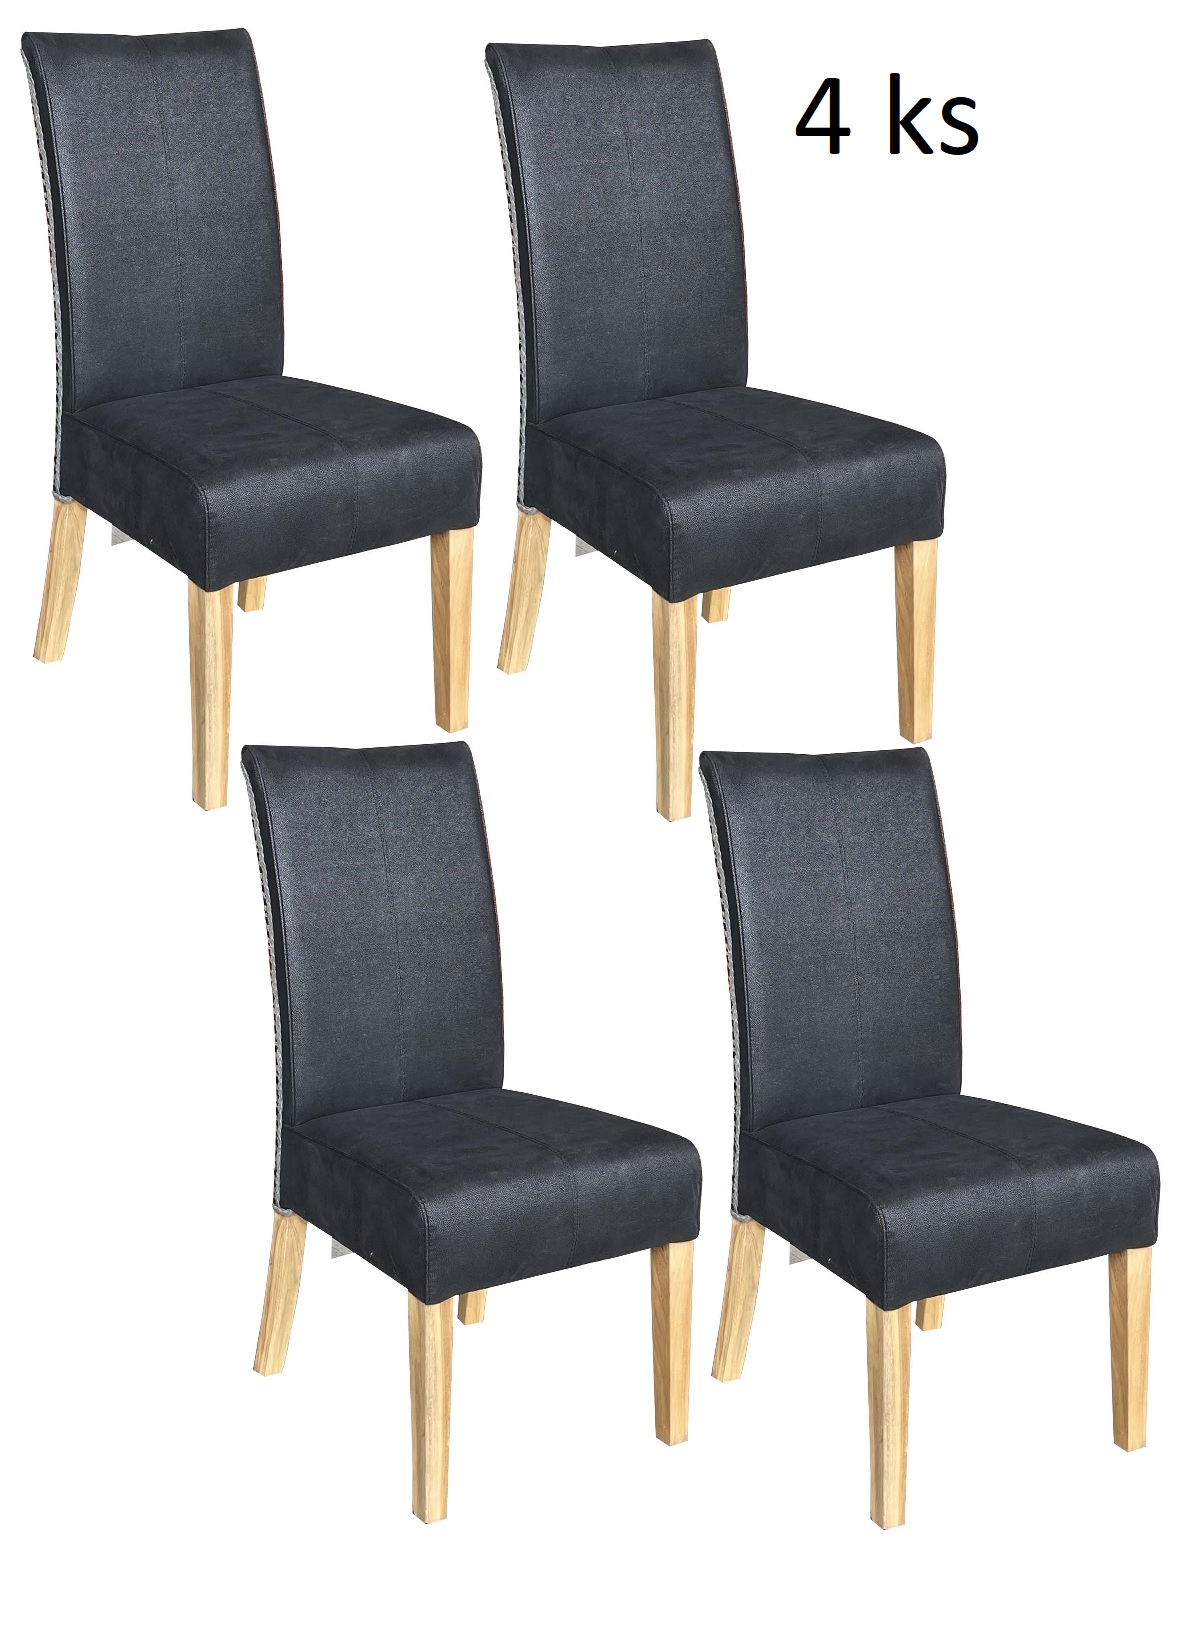 Jídelní židle CHESTER antracit - sada 4 kusy - Masiv